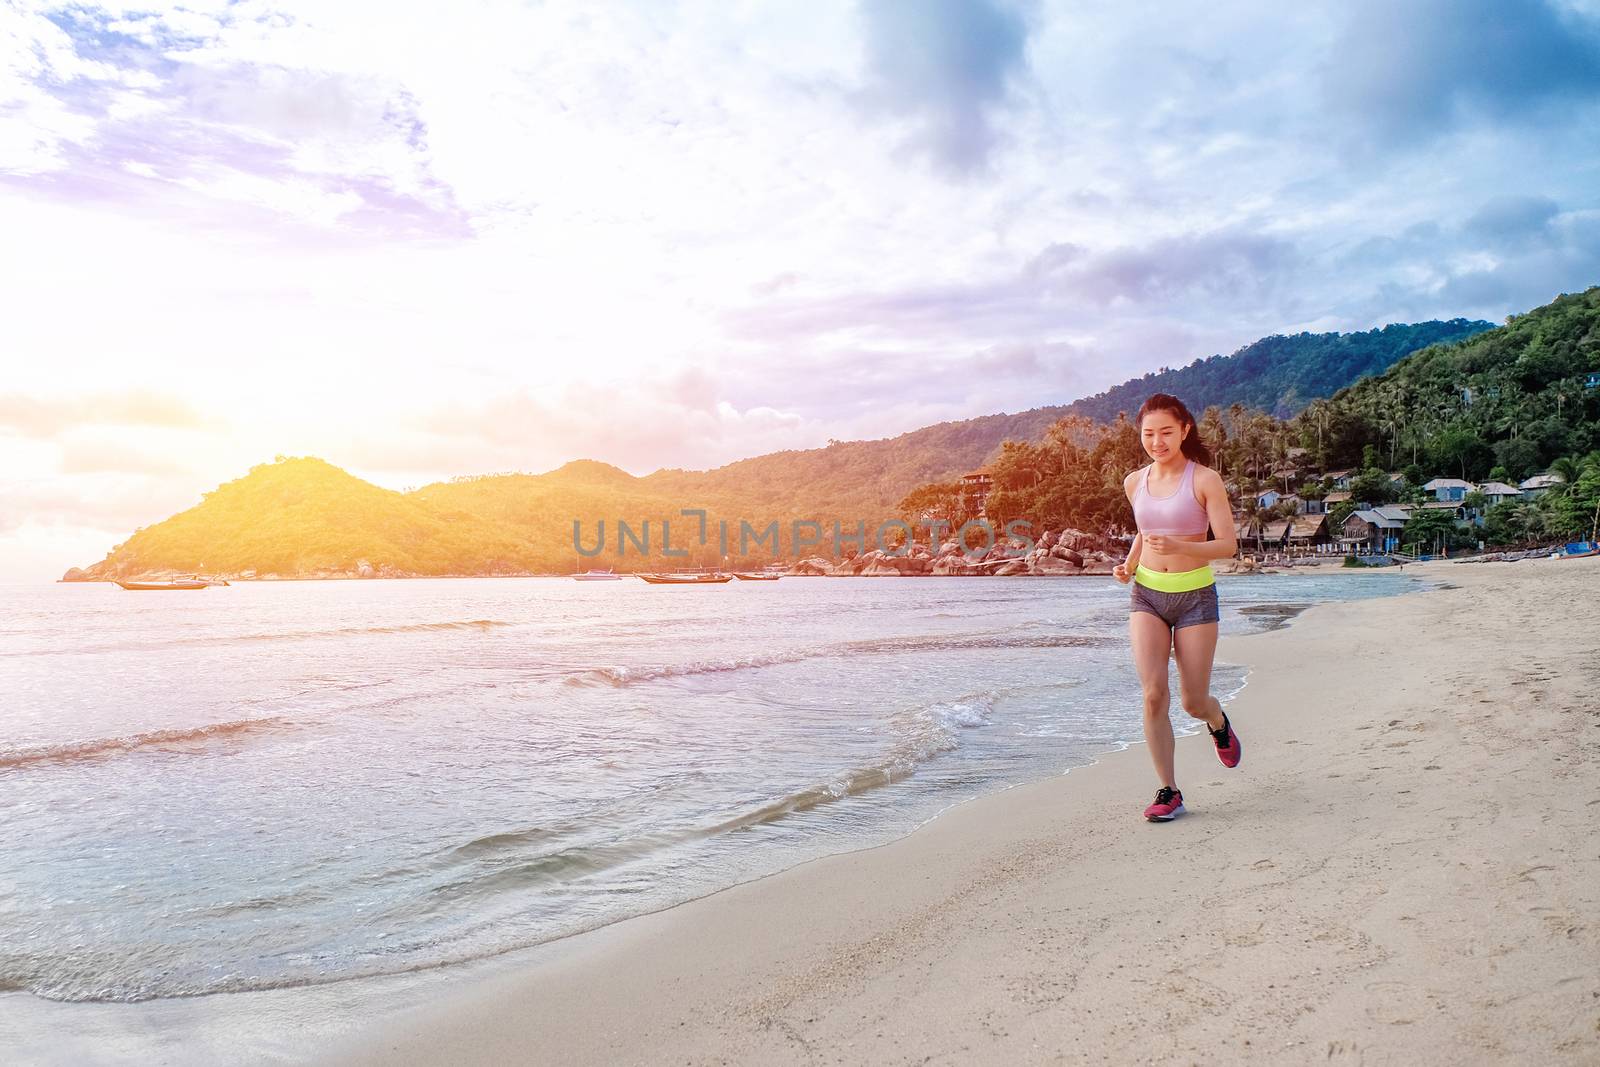 Runner woman running on beach in sunrise